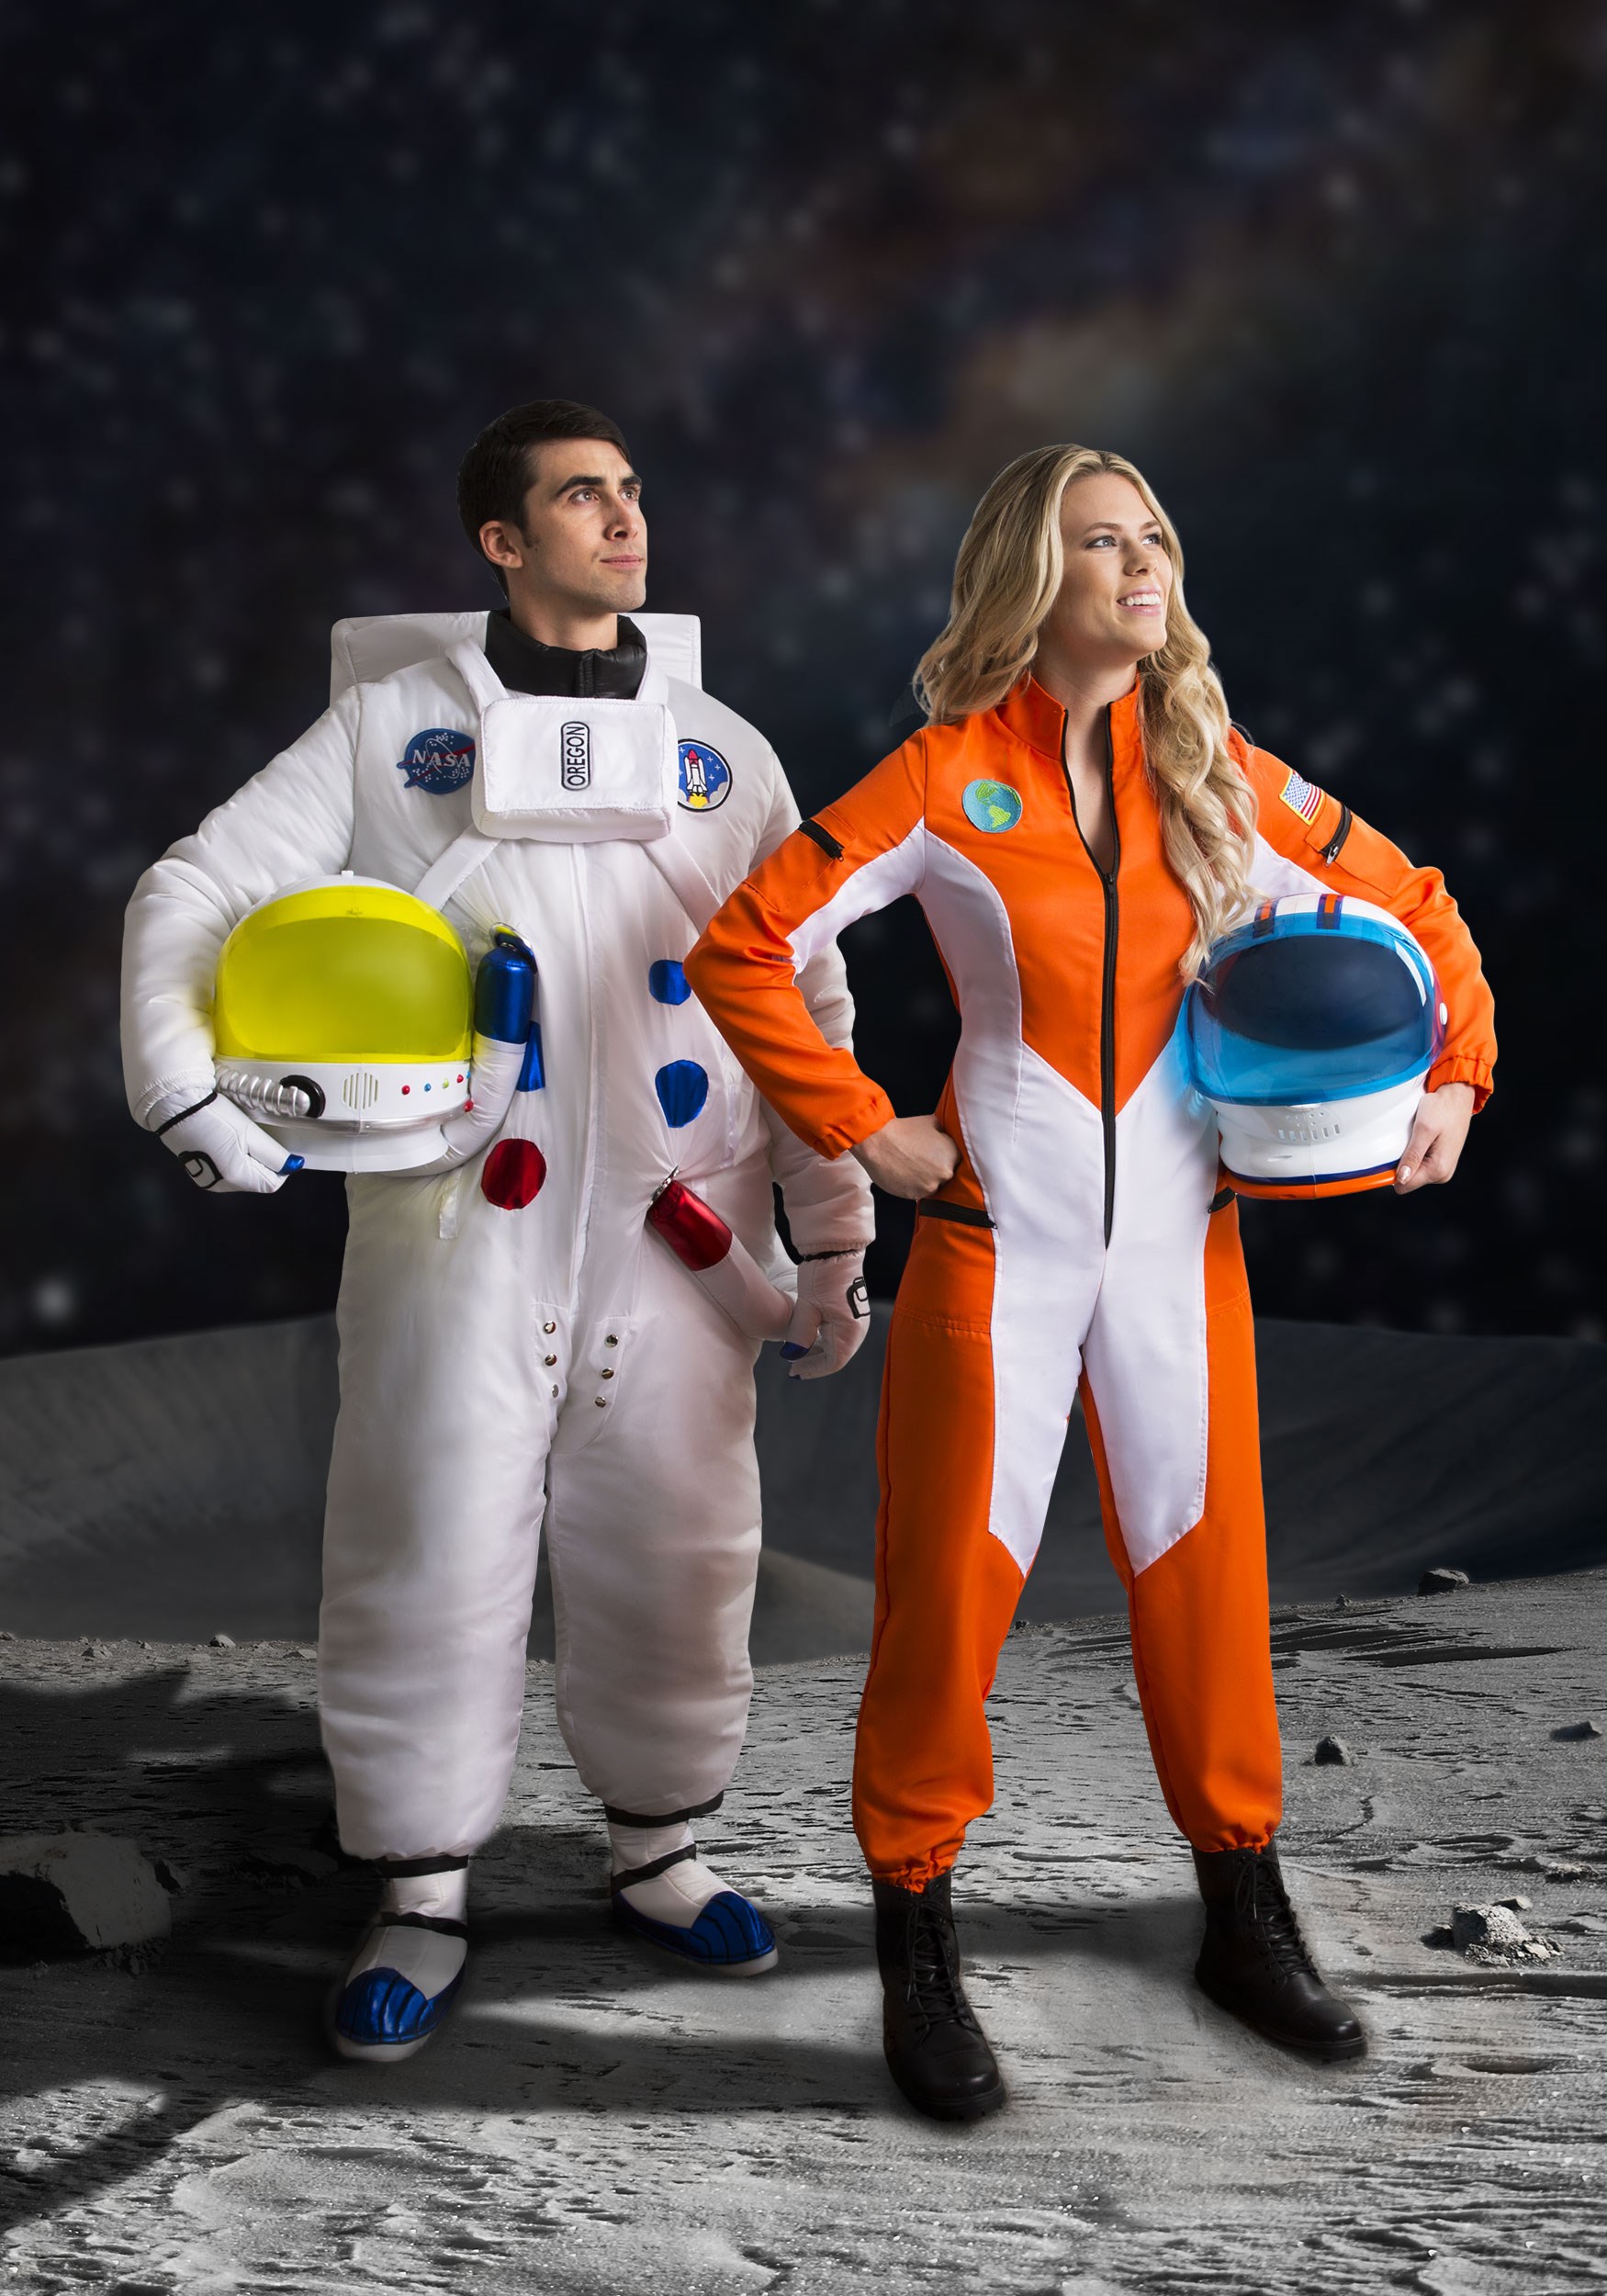 Casco de disfraces de astronauta adulto Multicolor – Yaxa Store